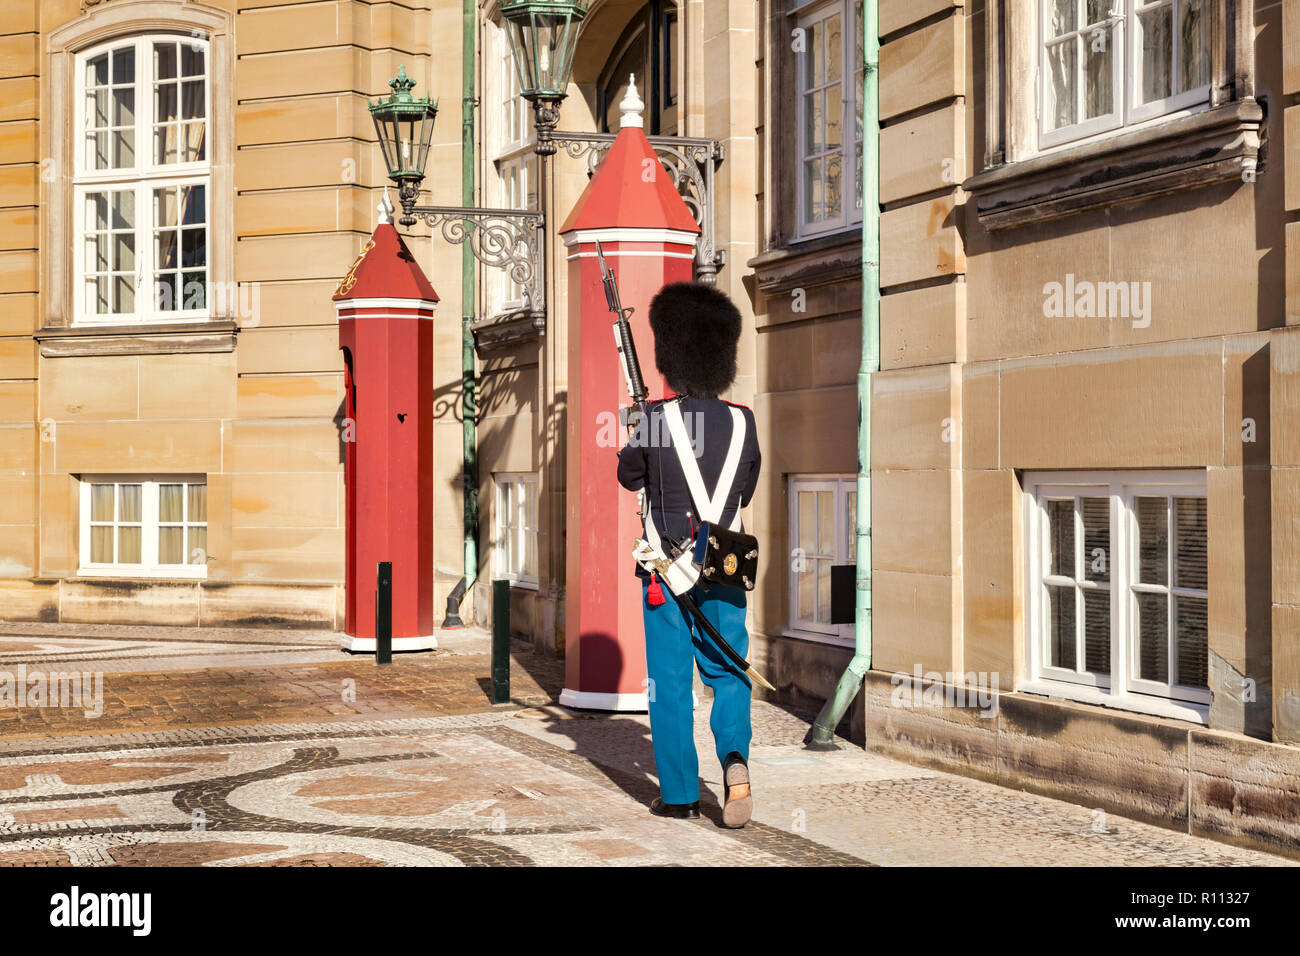 23 de septiembre de 2018: Copenhague, Dinamarca - Soldado de la Guardia Real Danesa, de guardia en el Palacio Amalienborg. Foto de stock